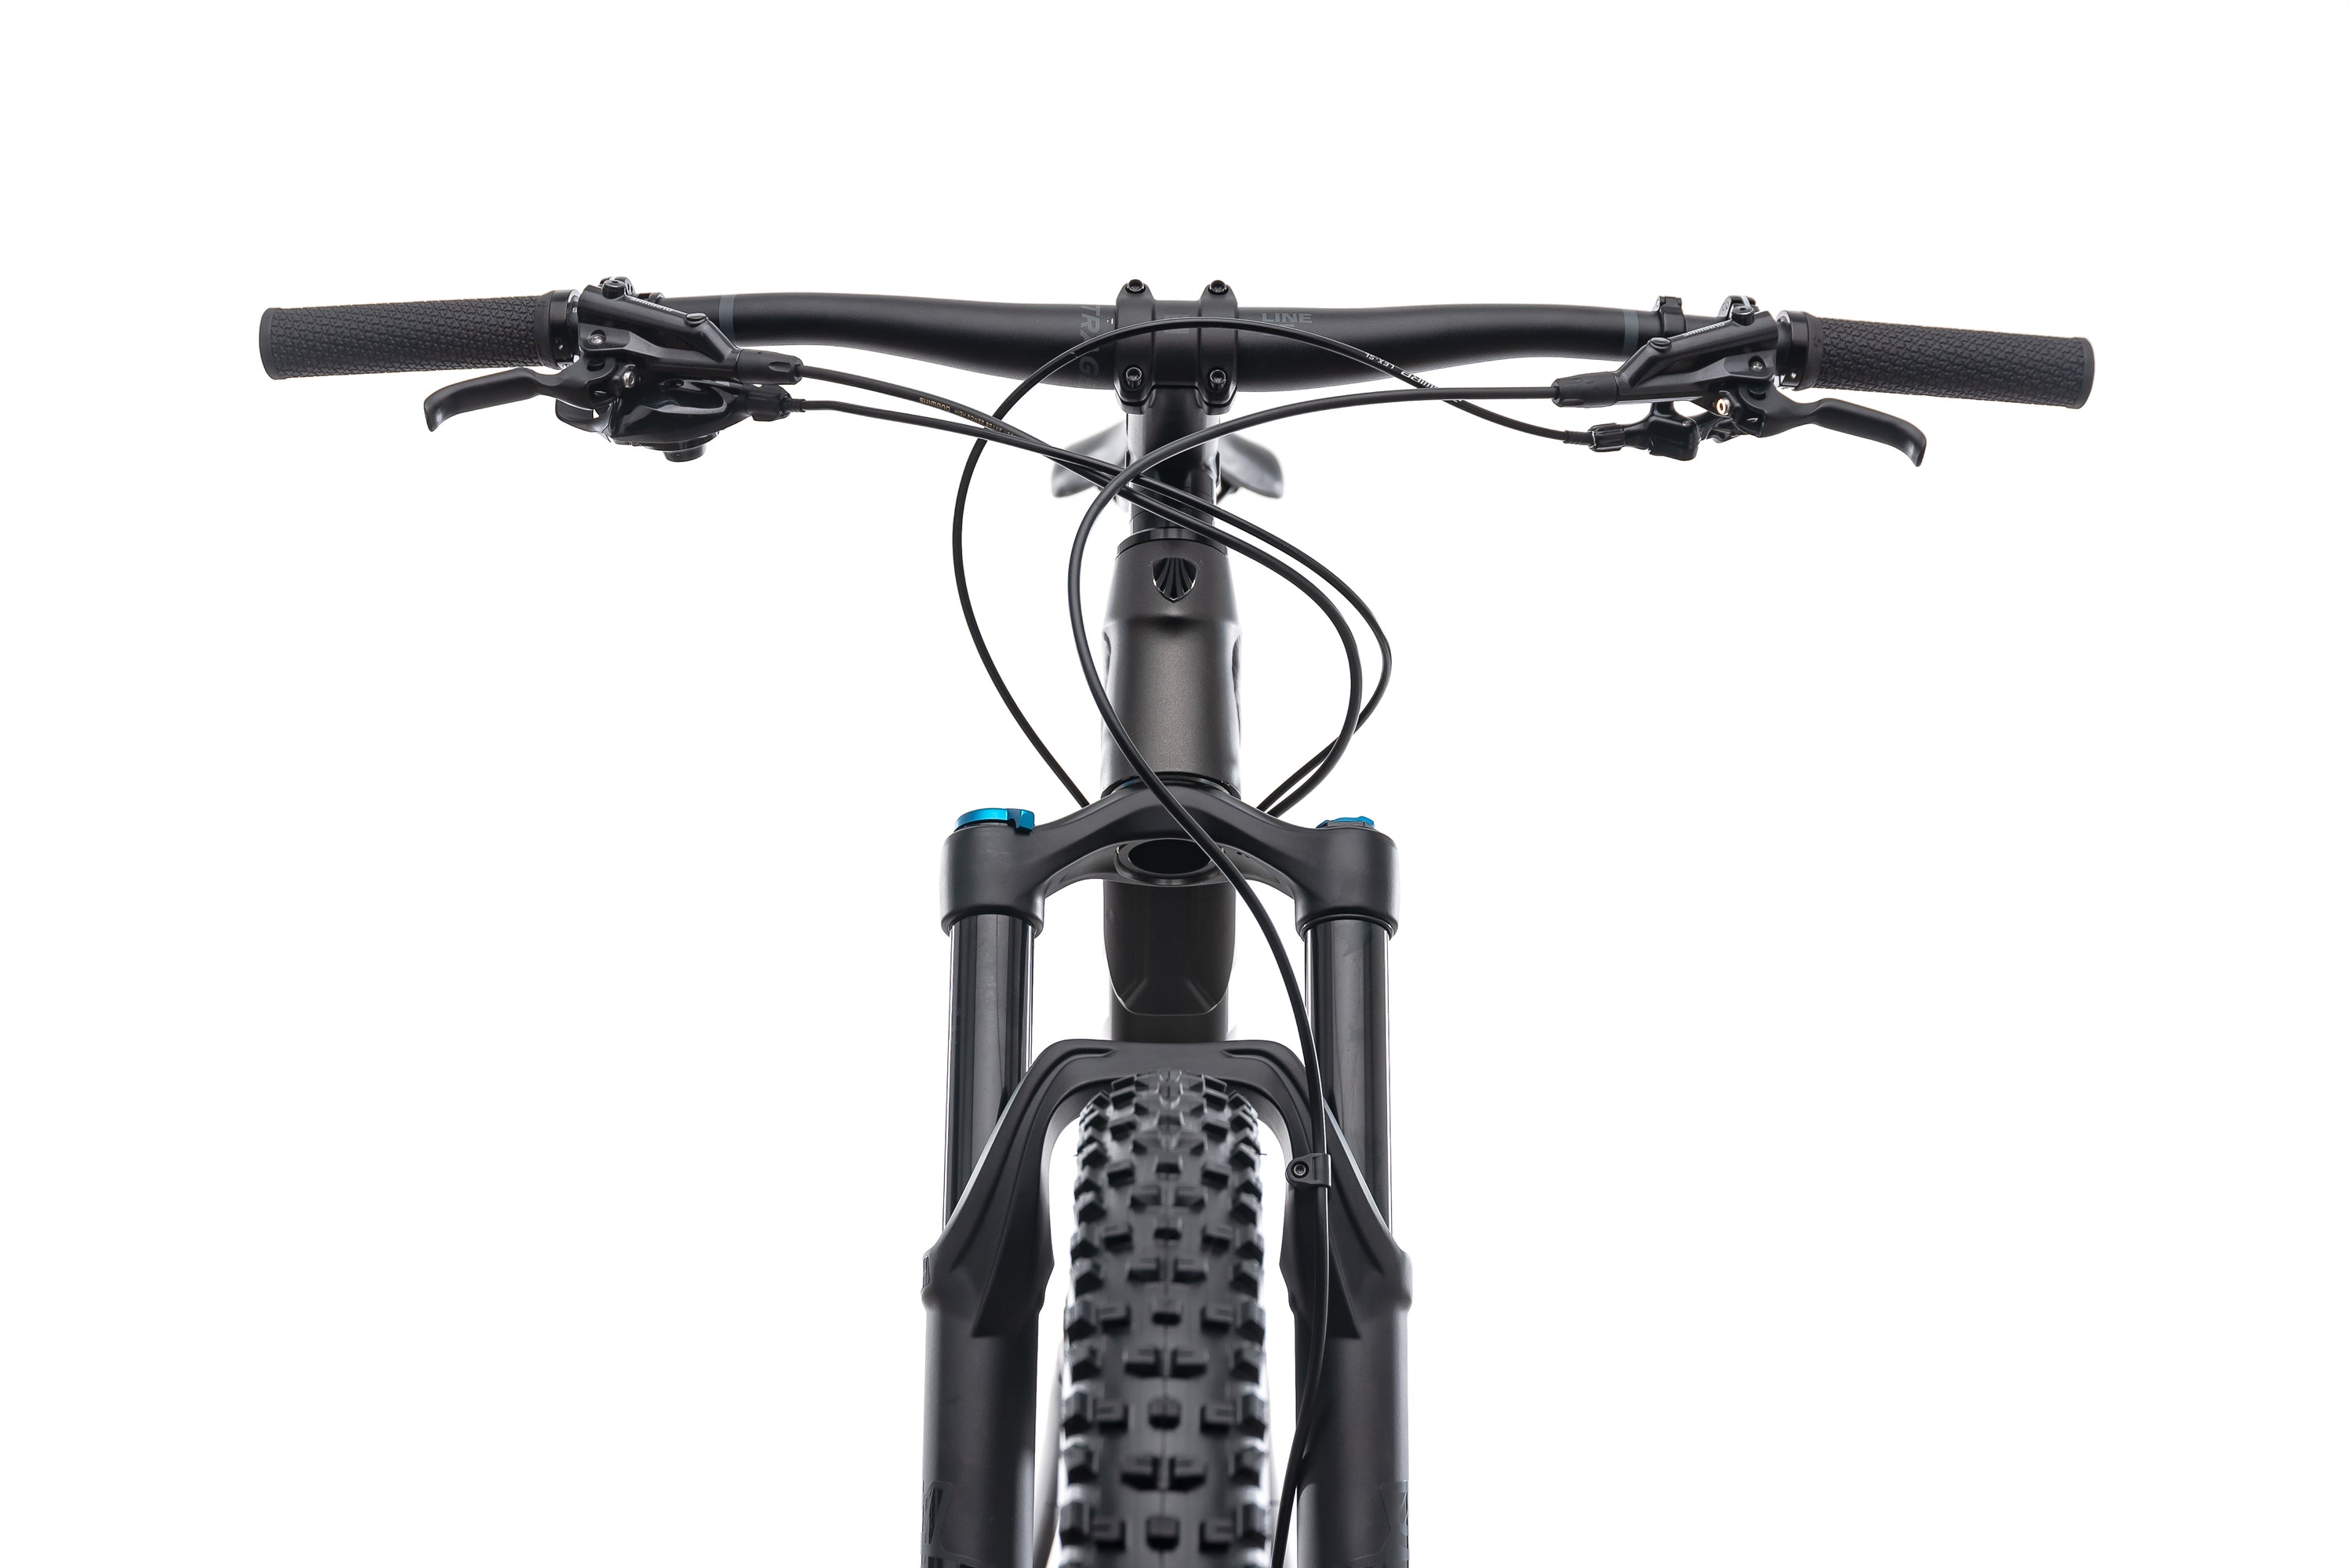 Trek Fuel EX 8 29 21.5" Bike - 2019 crank